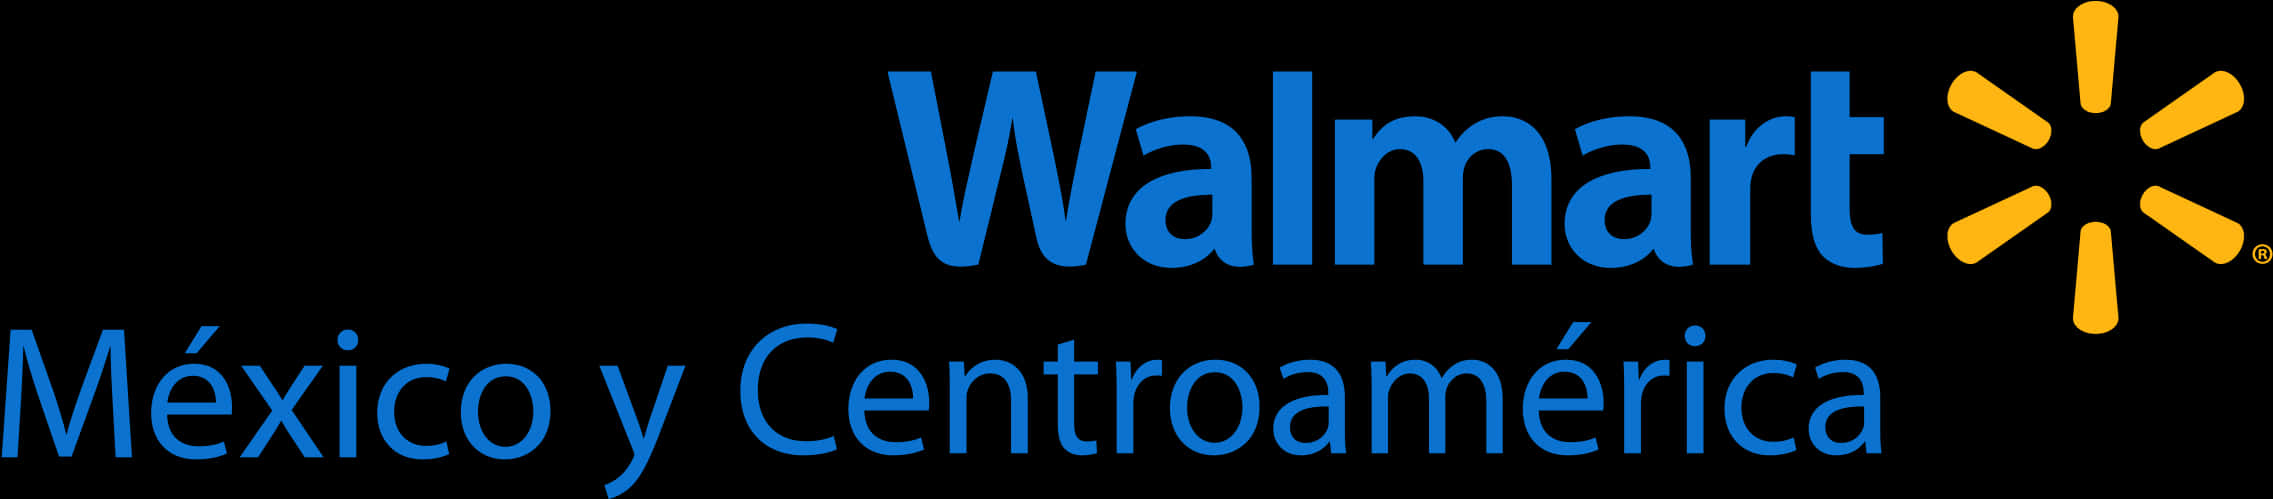 Walmart Mexico Centroamerica Logo